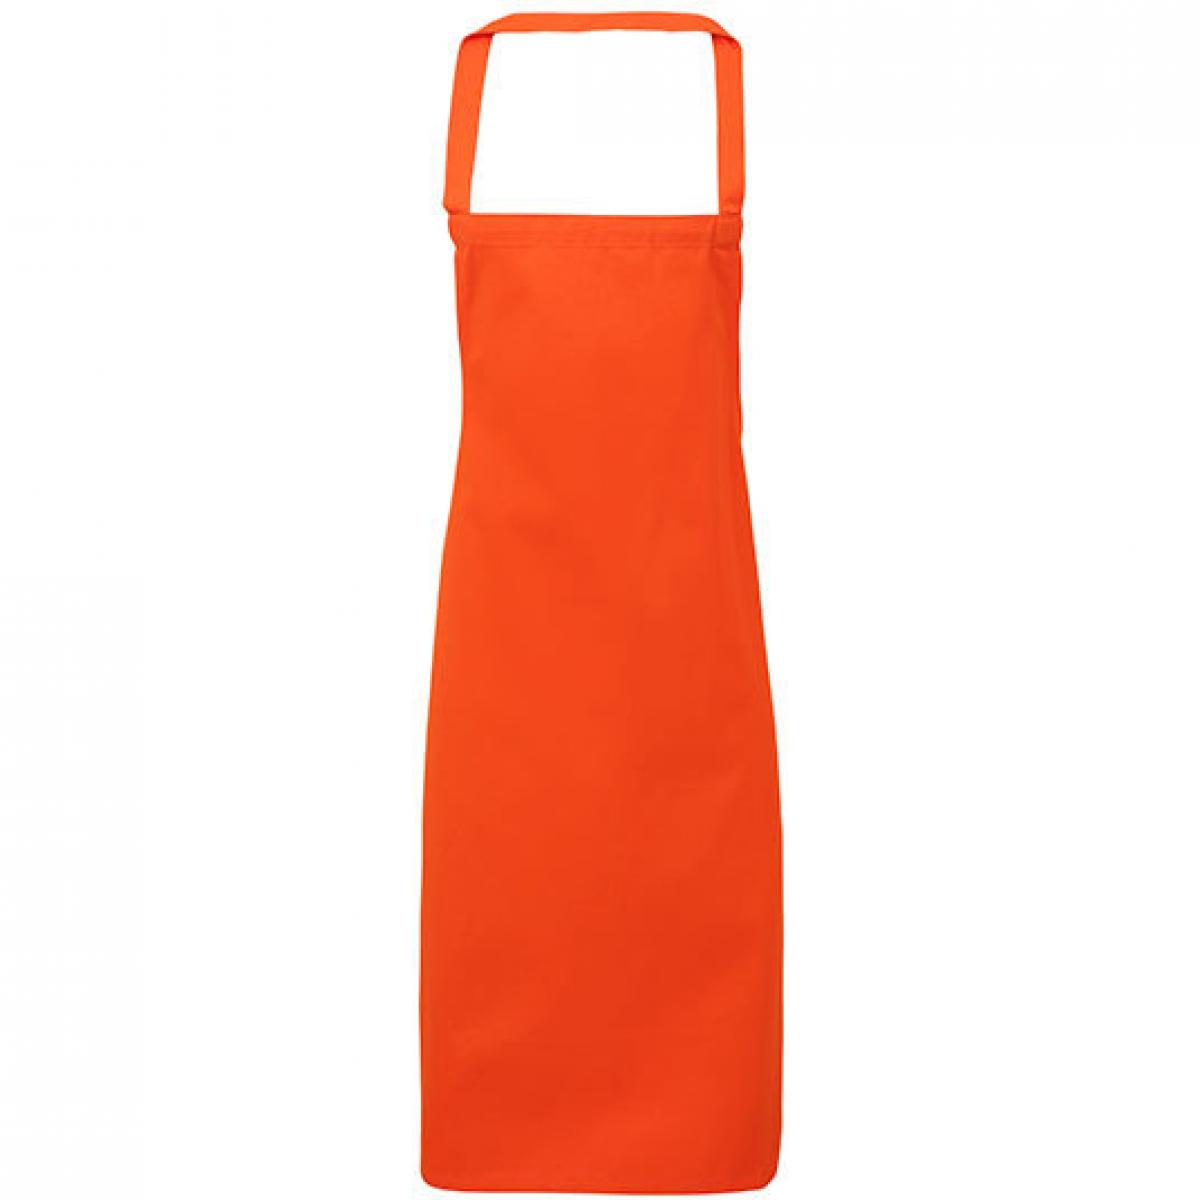 Hersteller: Premier Workwear Herstellernummer: PR102 Artikelbezeichnung: Cotton Apron (No Pocket) - 60 x 87 cm Farbe: Orange (ca. Pantone 1655)